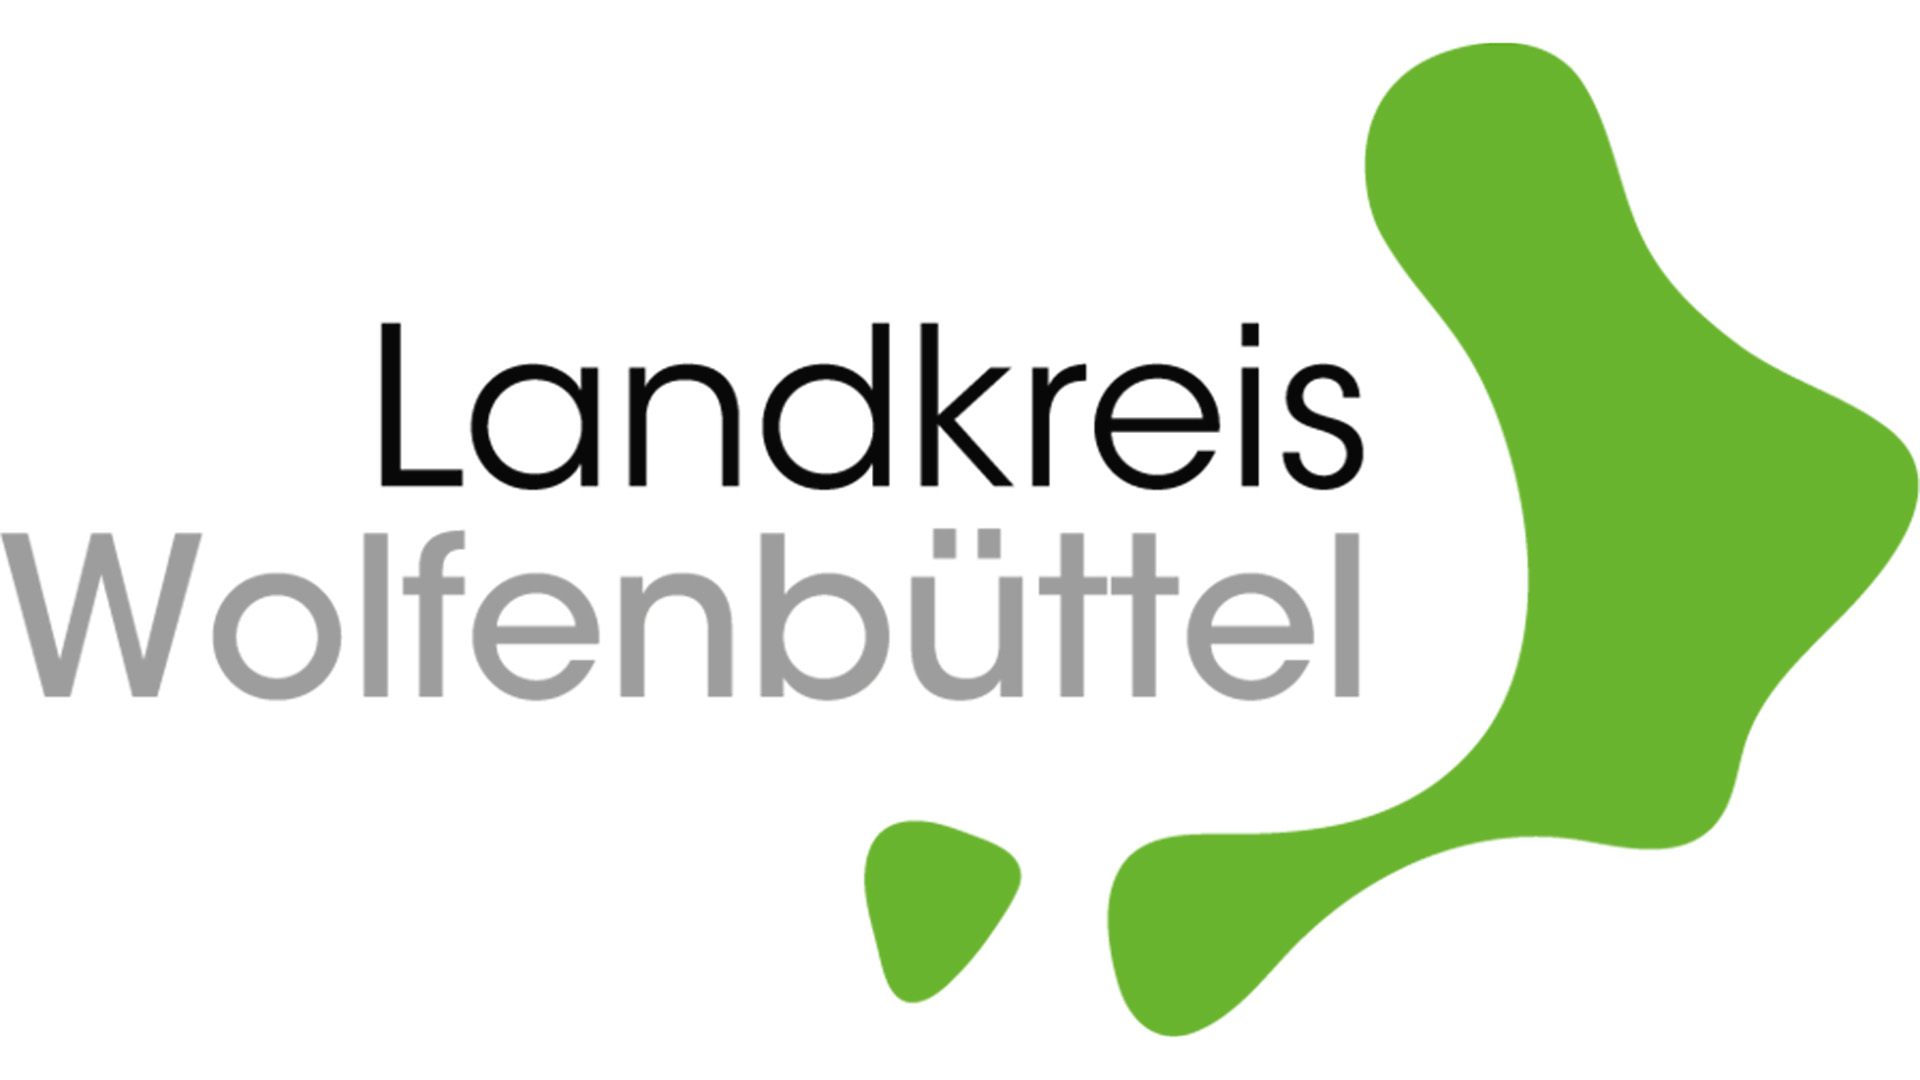 Link zur Internetseite des Landkreises Wolfenbüttel
Bildmotiv: Logo mit der Aufschrift "Landkreis Wolfenbüttel". Daneben ist das Landkreisgebiet als grüne Fläche stilisiert dargestellt.